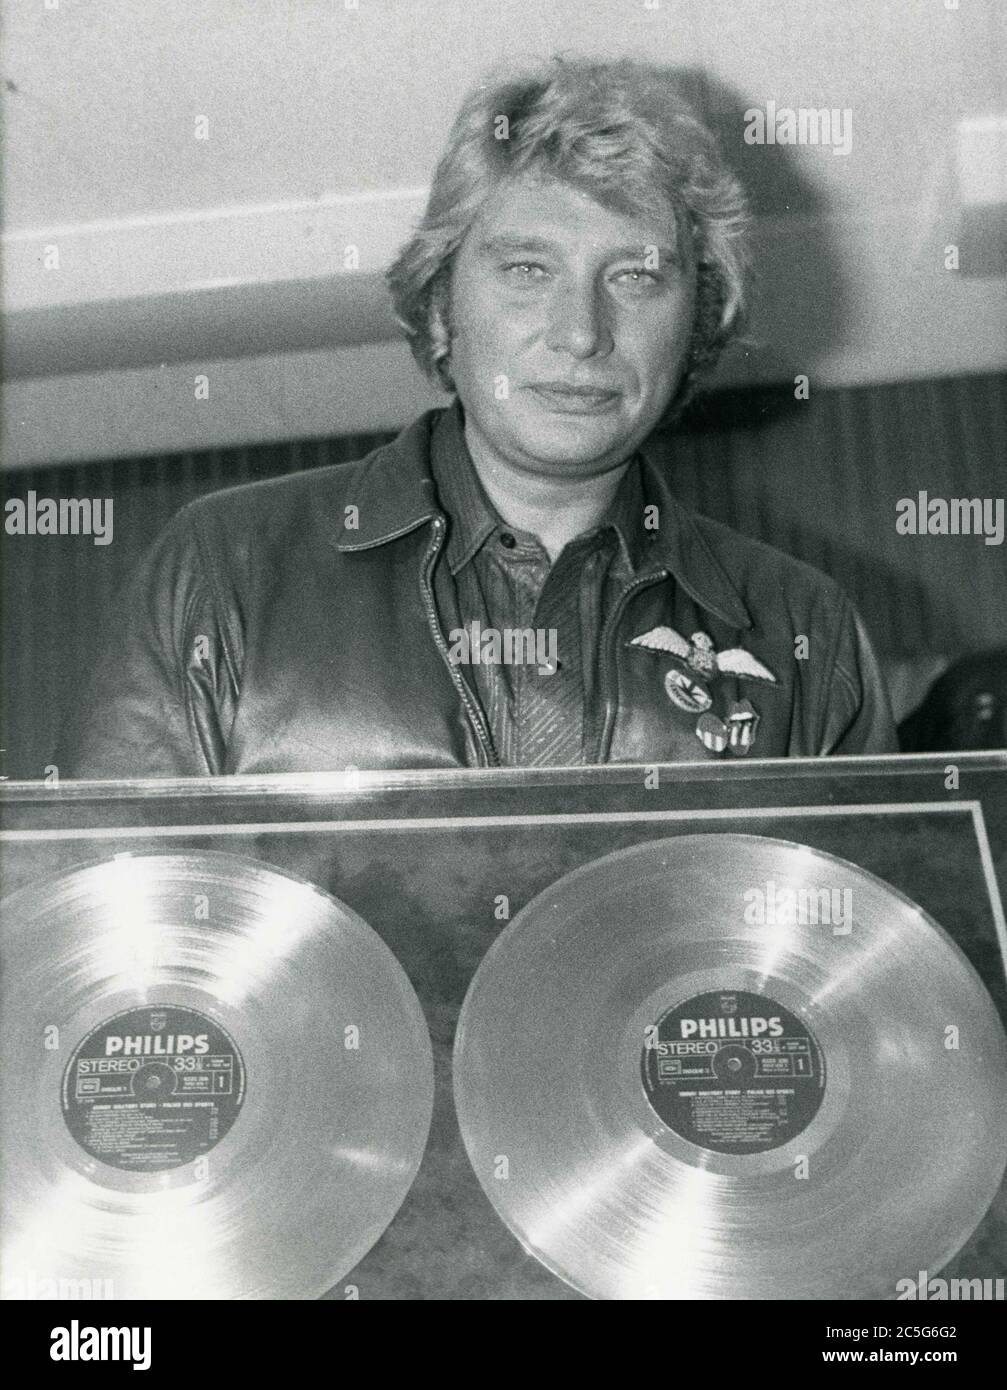 10 juin 1978 - Paris, France - JOHNNY HALLYDAY détient ses doubles prix de  platine qu'il a reçus du SNEP, Syndicat National de l'édition  phonographique (Syndicat National de l'Edition phonographique). Date exacte